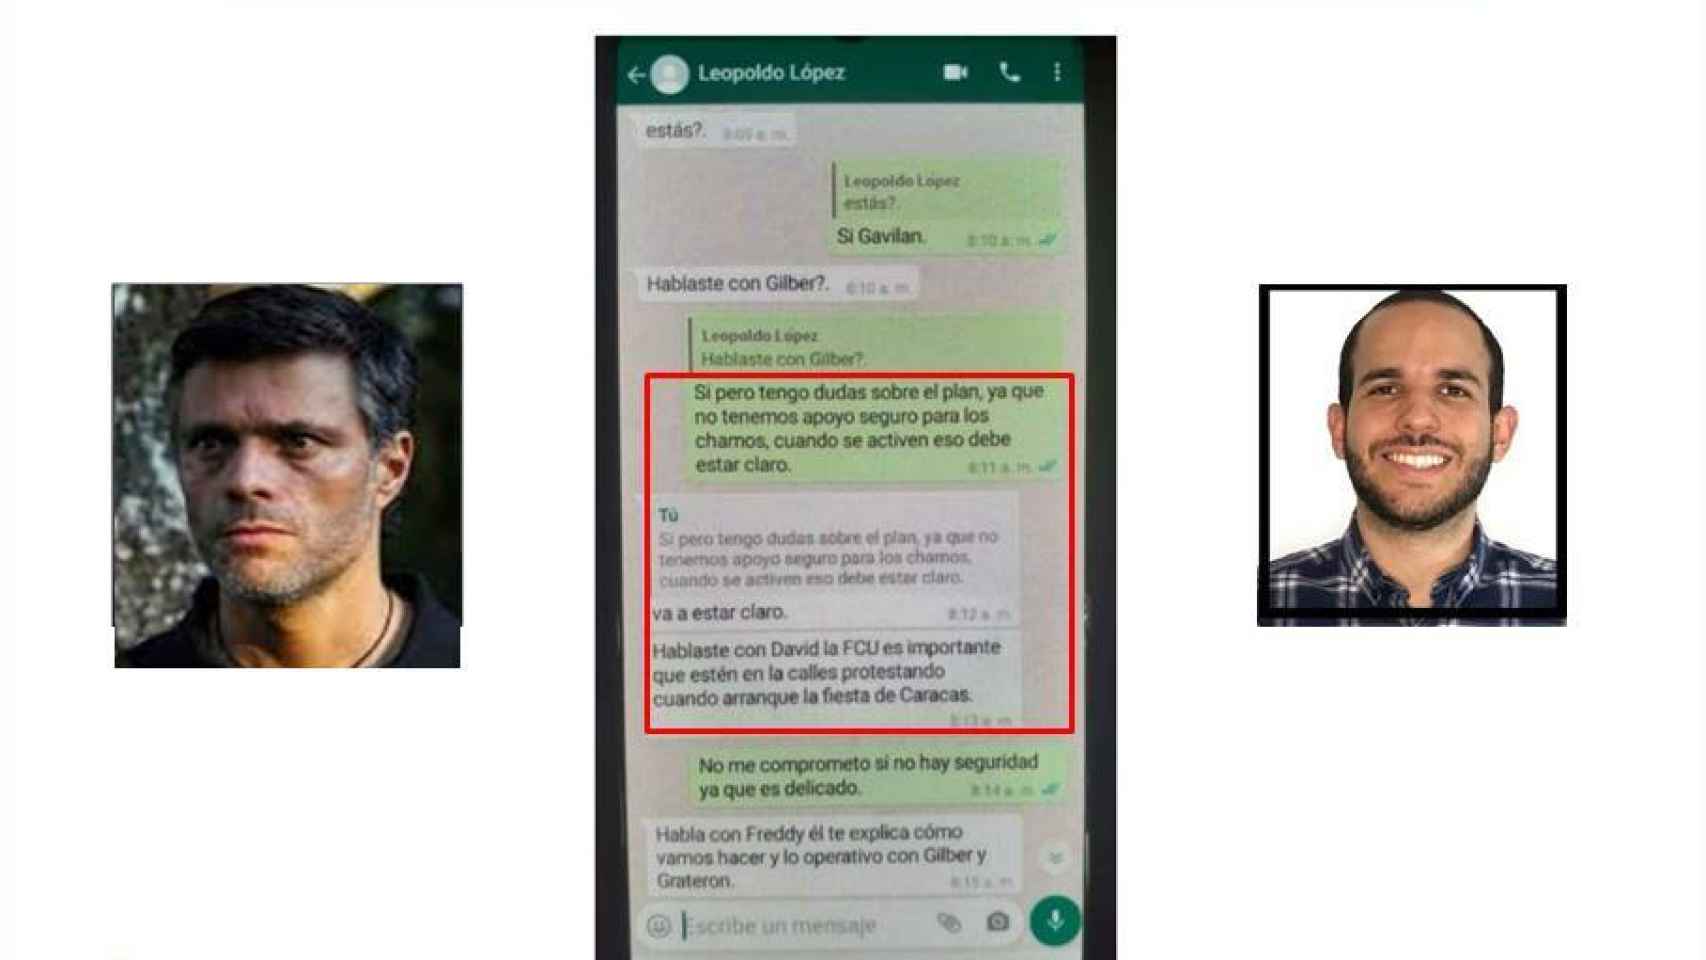 Captura de pantalla con una supuesta conversación entre Leopoldo López y Hasler Iglesias que utiliza el régimen venezolano como evidencia.